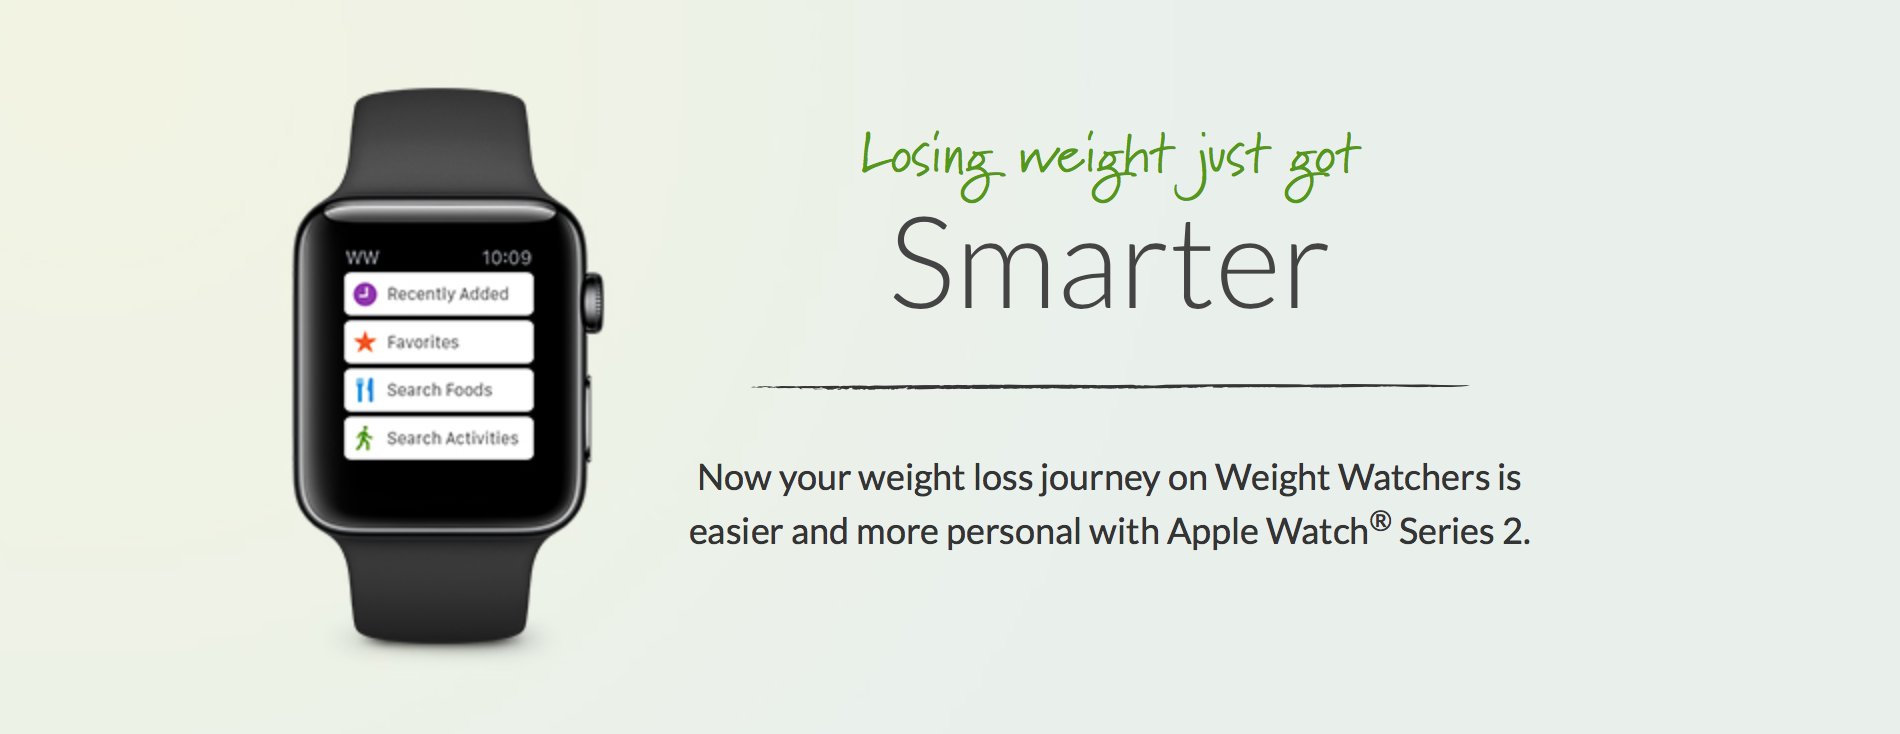 Weight Watchers Offers a Deal on an Apple Watch 2